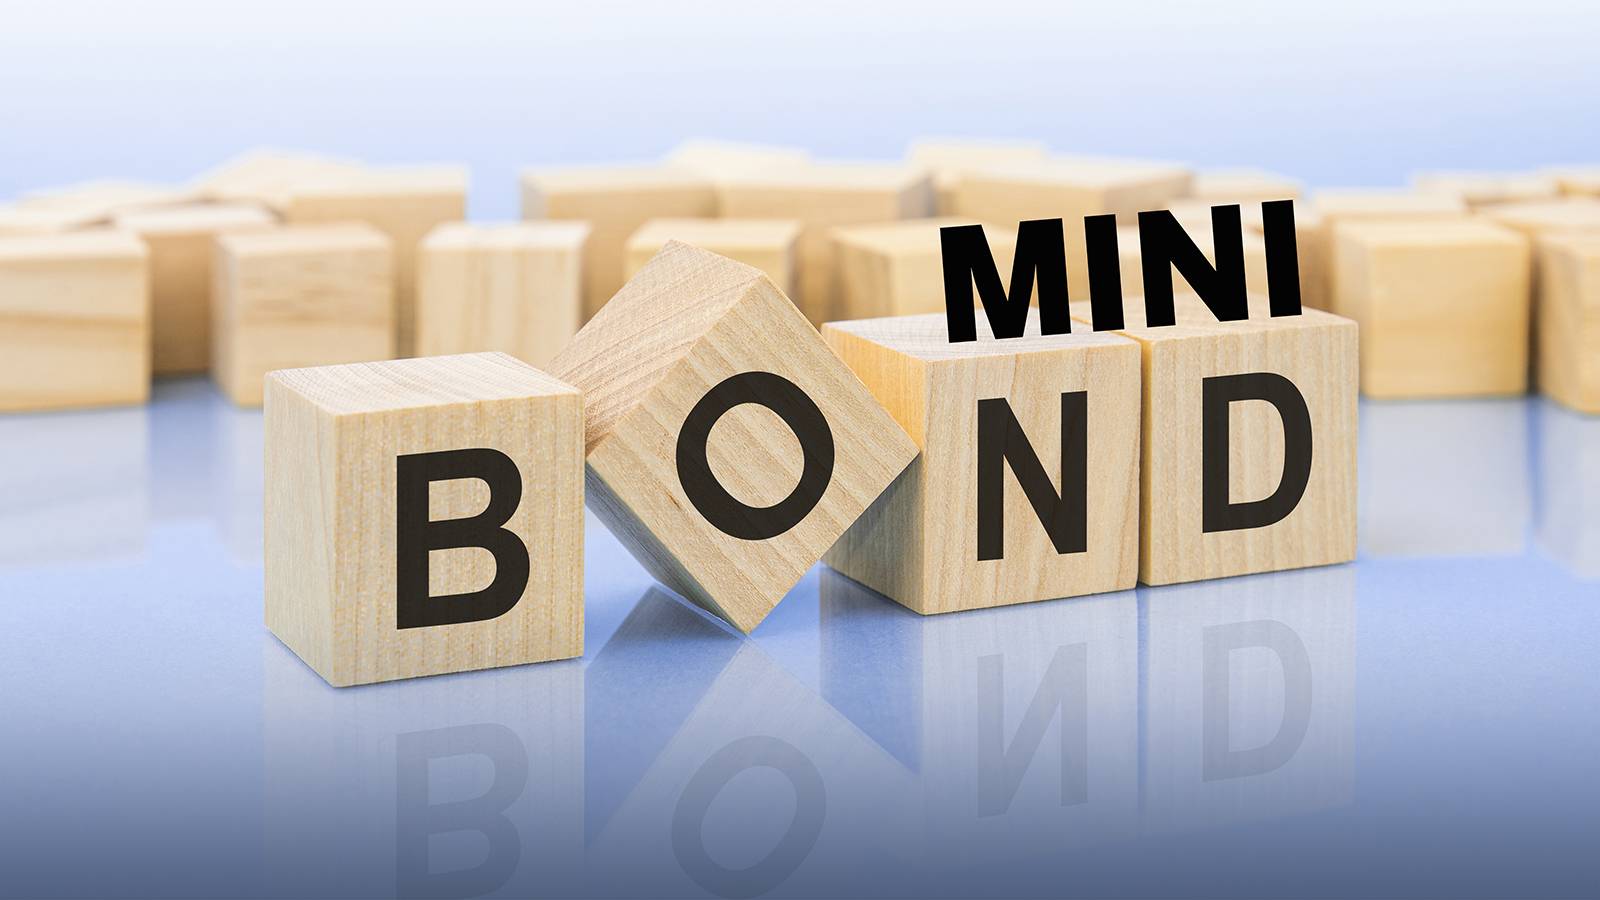 Mini-bond, che cosa sono?